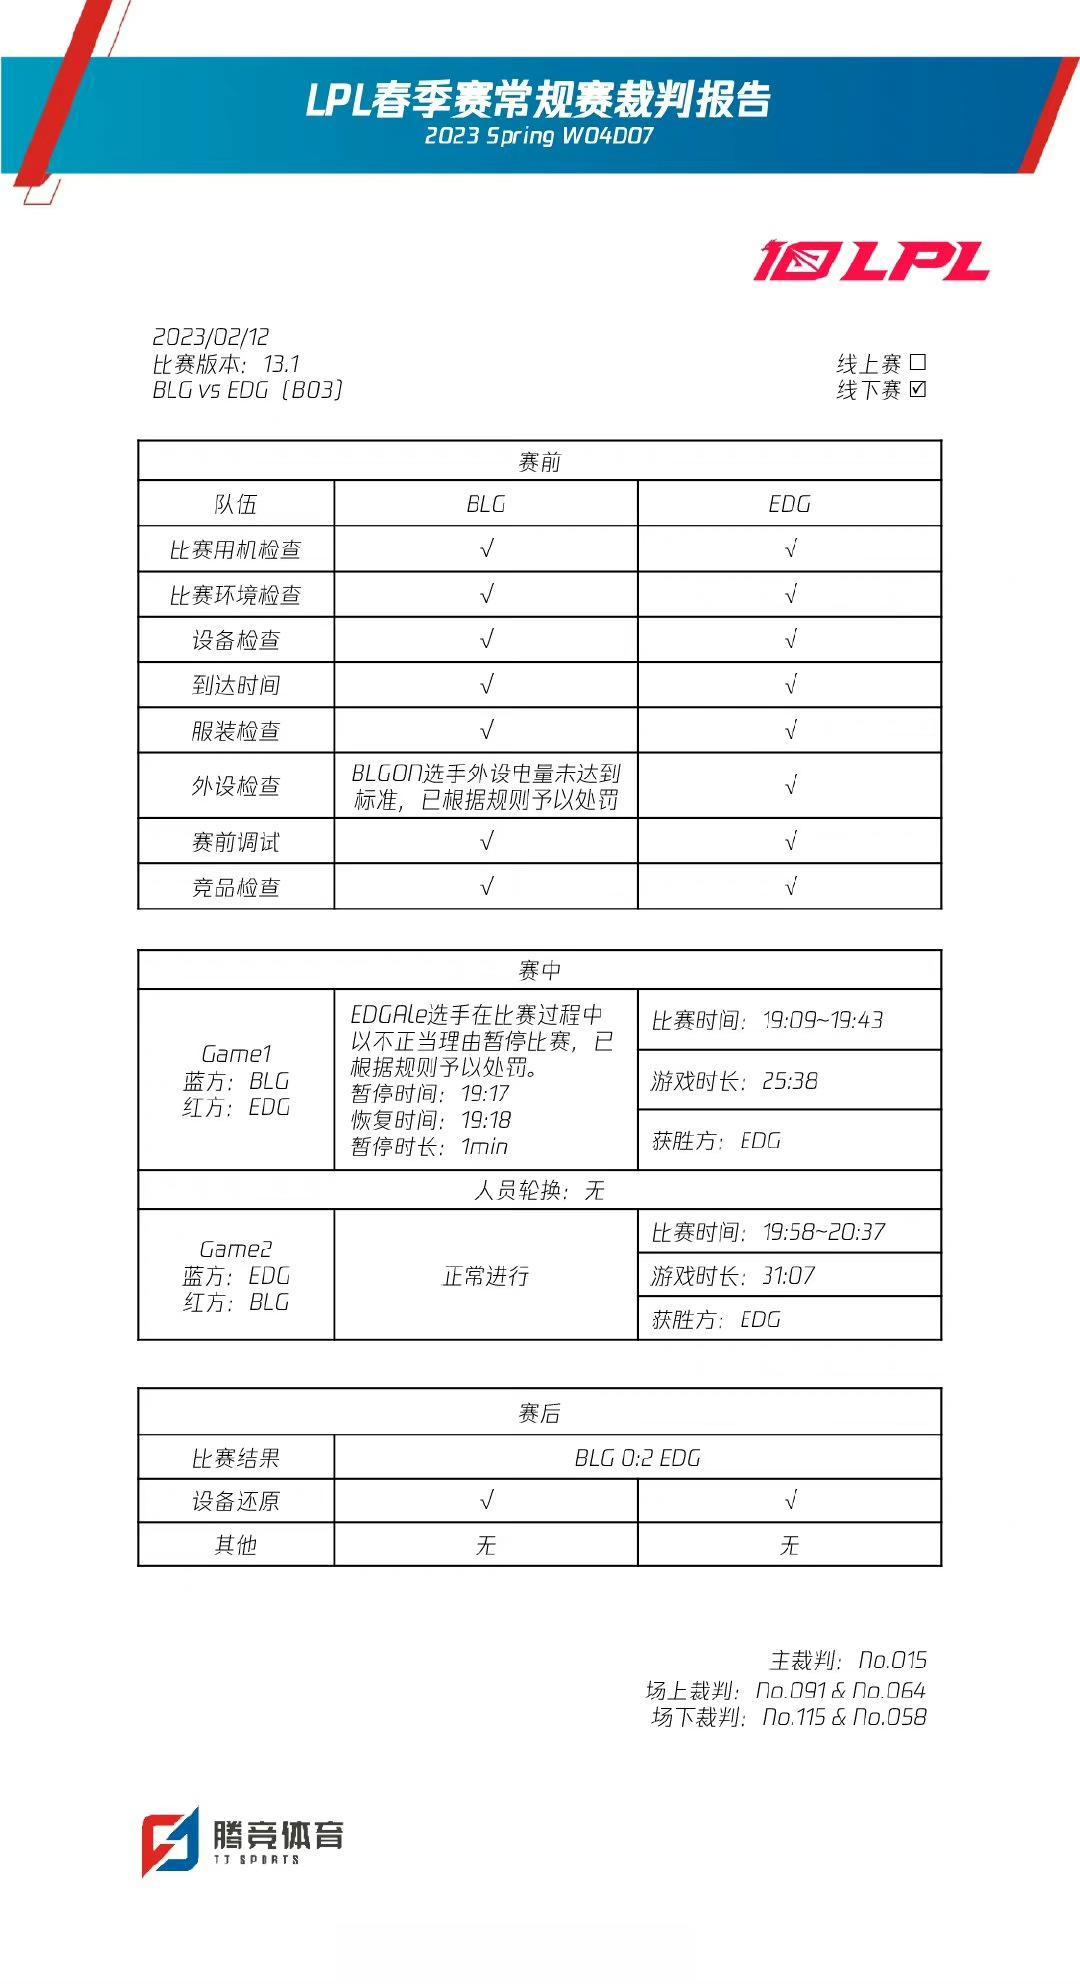 【LPL春季赛常规赛裁判报告：ON、Ale被处罚】 

2023/02/12  